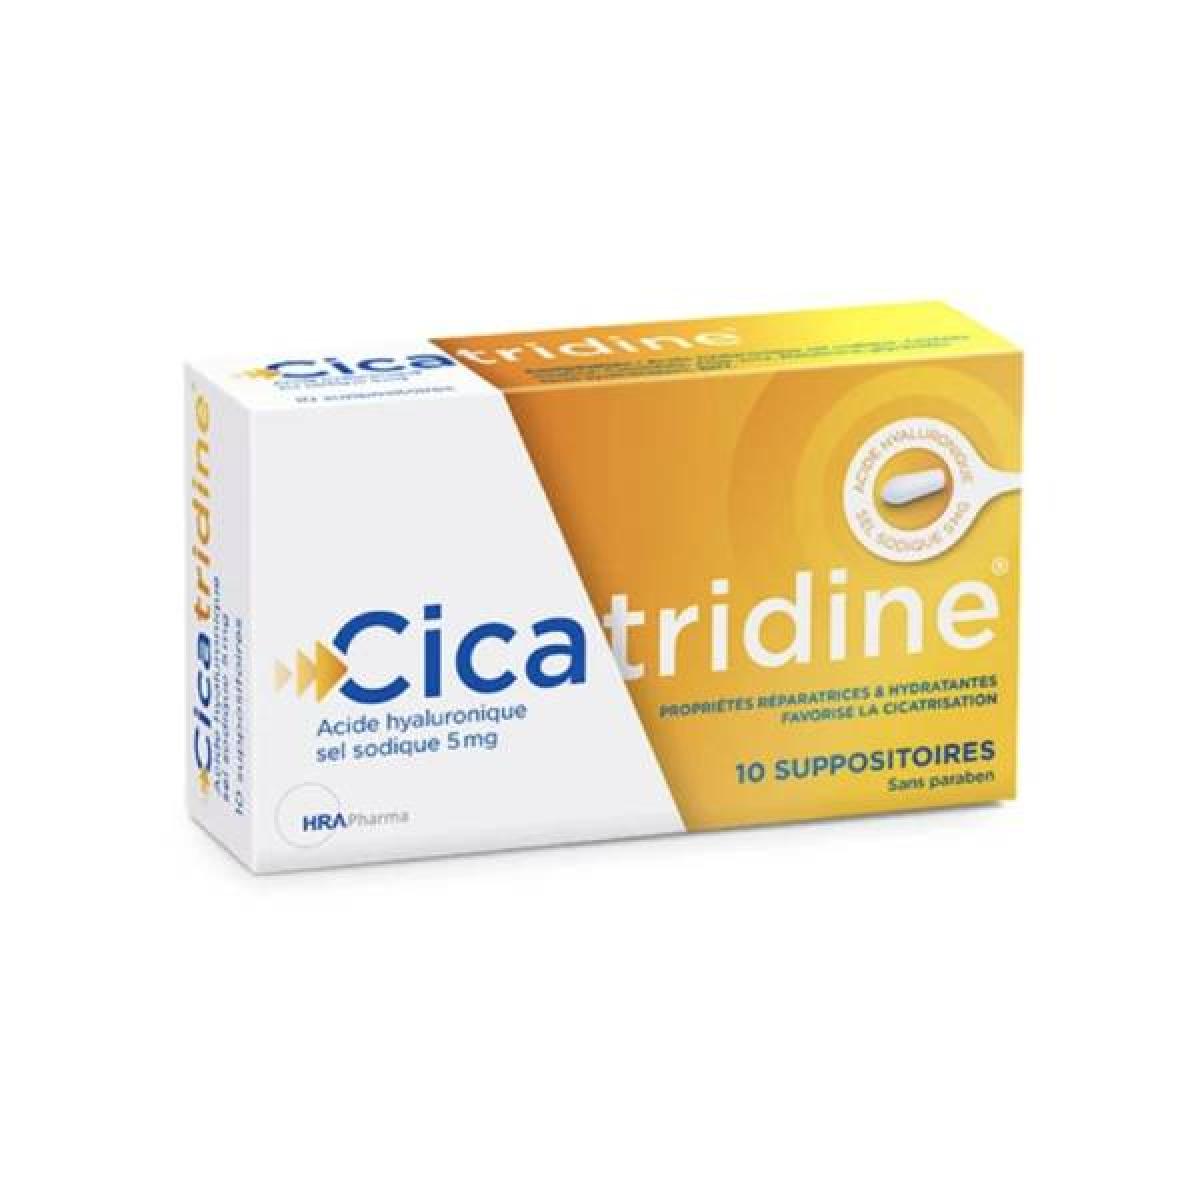 Cicatridine 10 Suppositoires